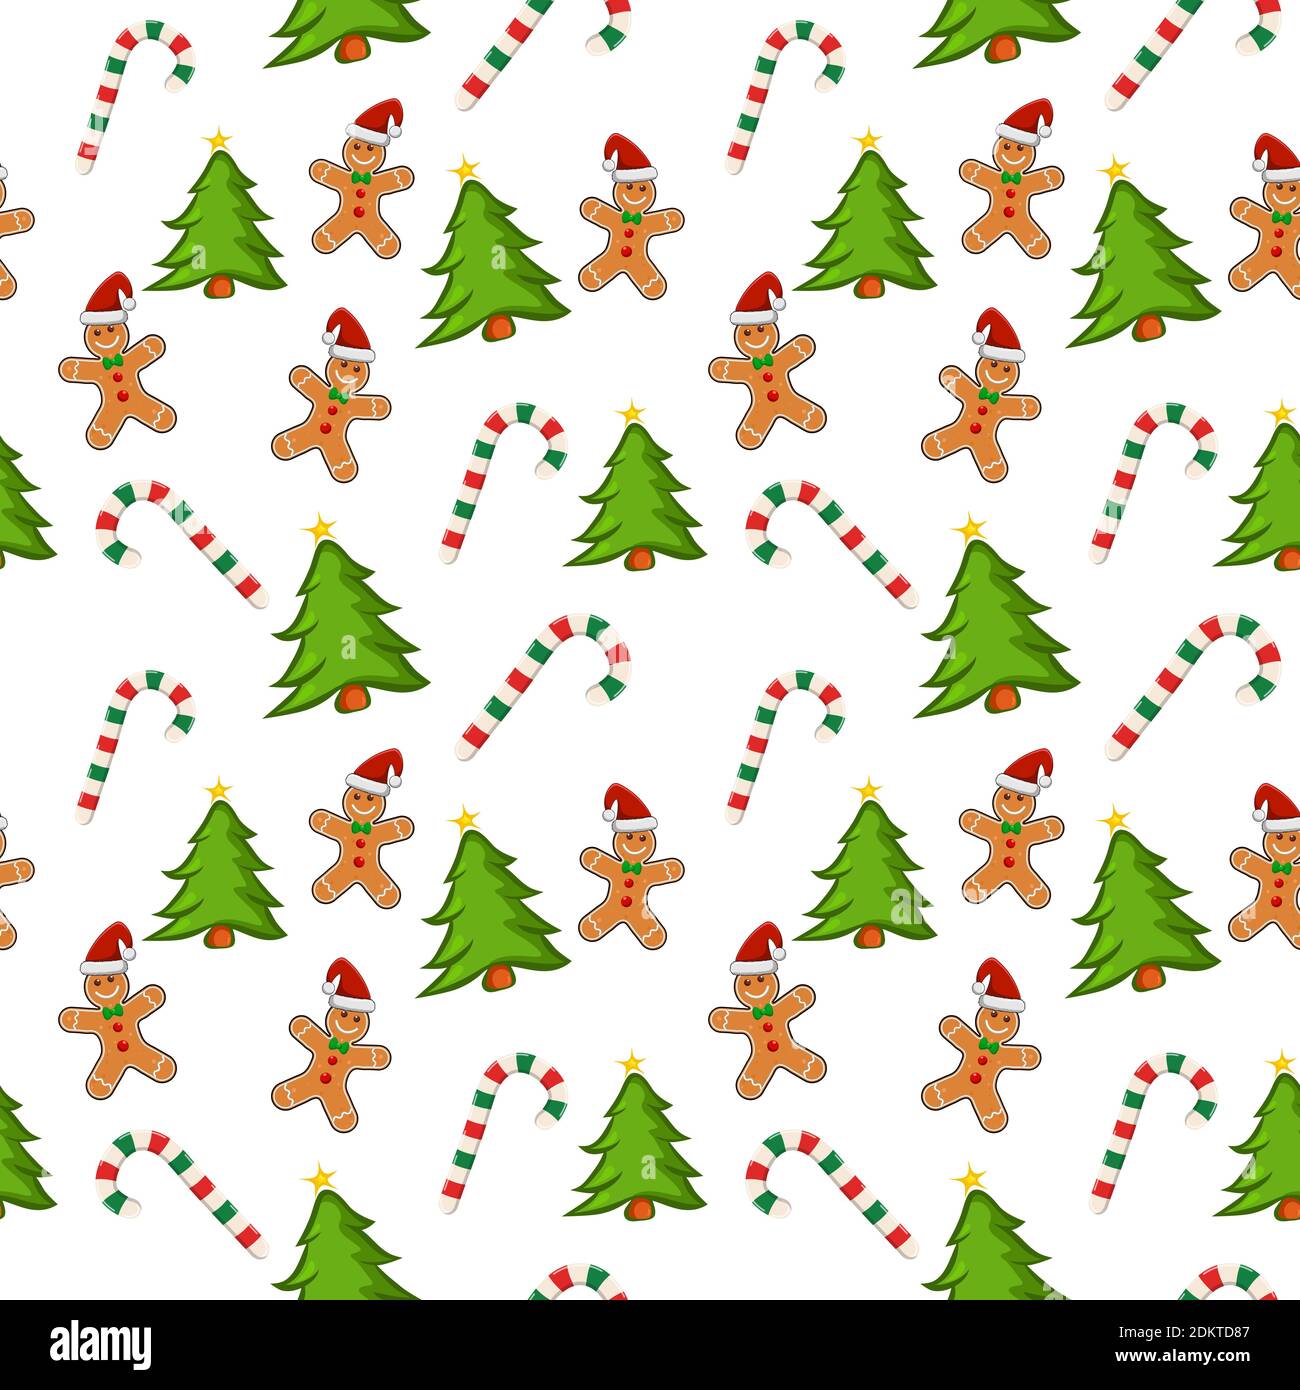 Motif de Noël avec biscuits au pain d'épice, canne à sucre et arbre de noël sur fond blanc. Papier d'emballage avec carreaux répétés. Super pour noël c Illustration de Vecteur